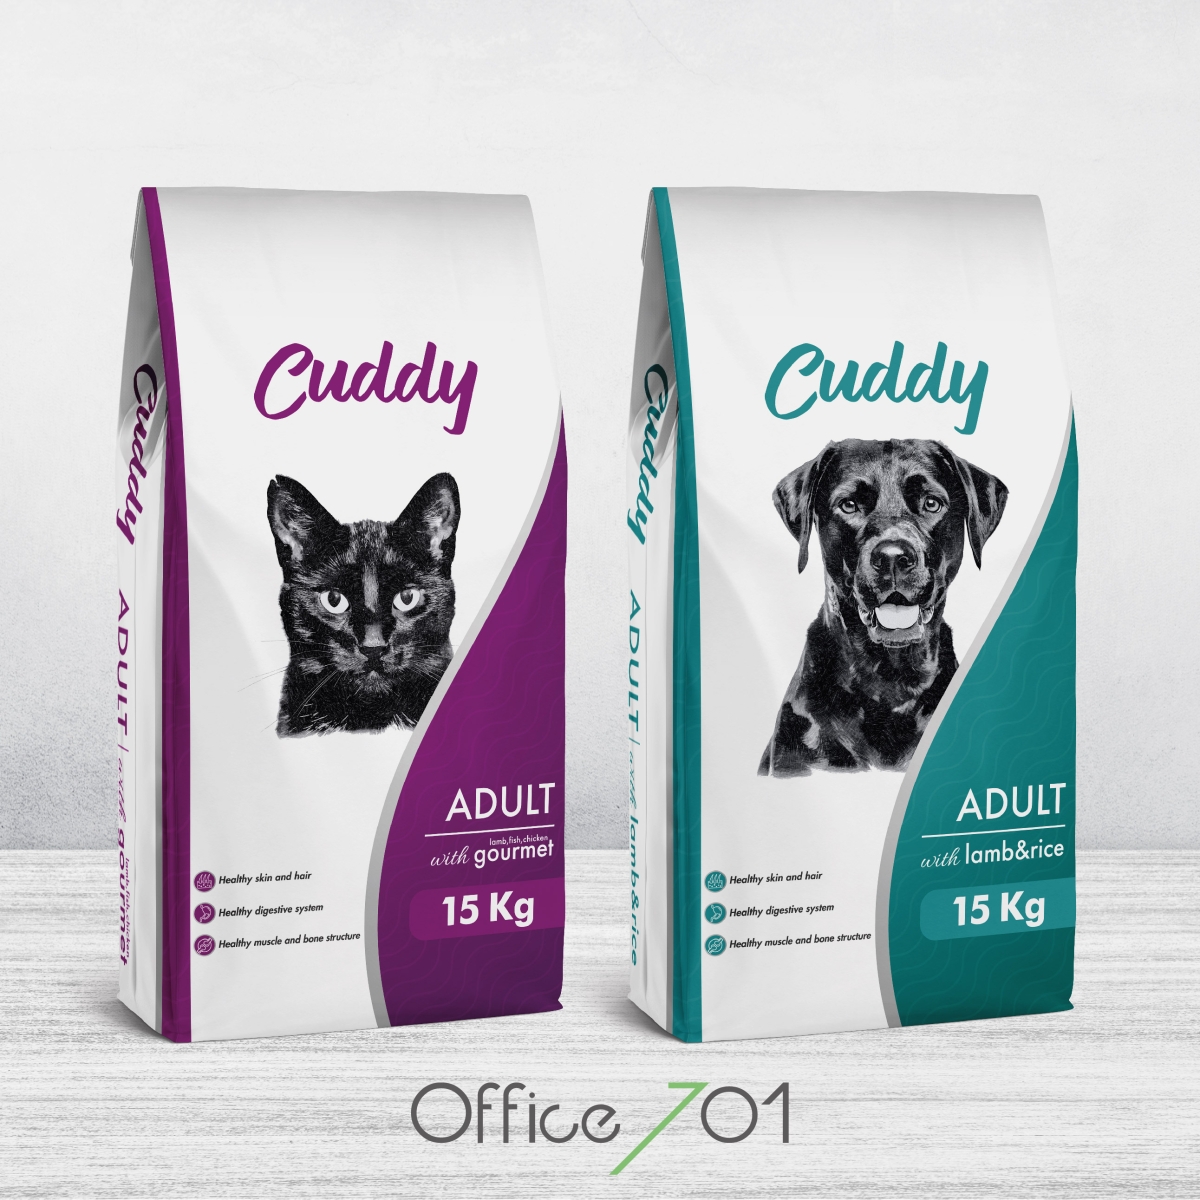 Office701 | Cuddy | Pet Food Package Design